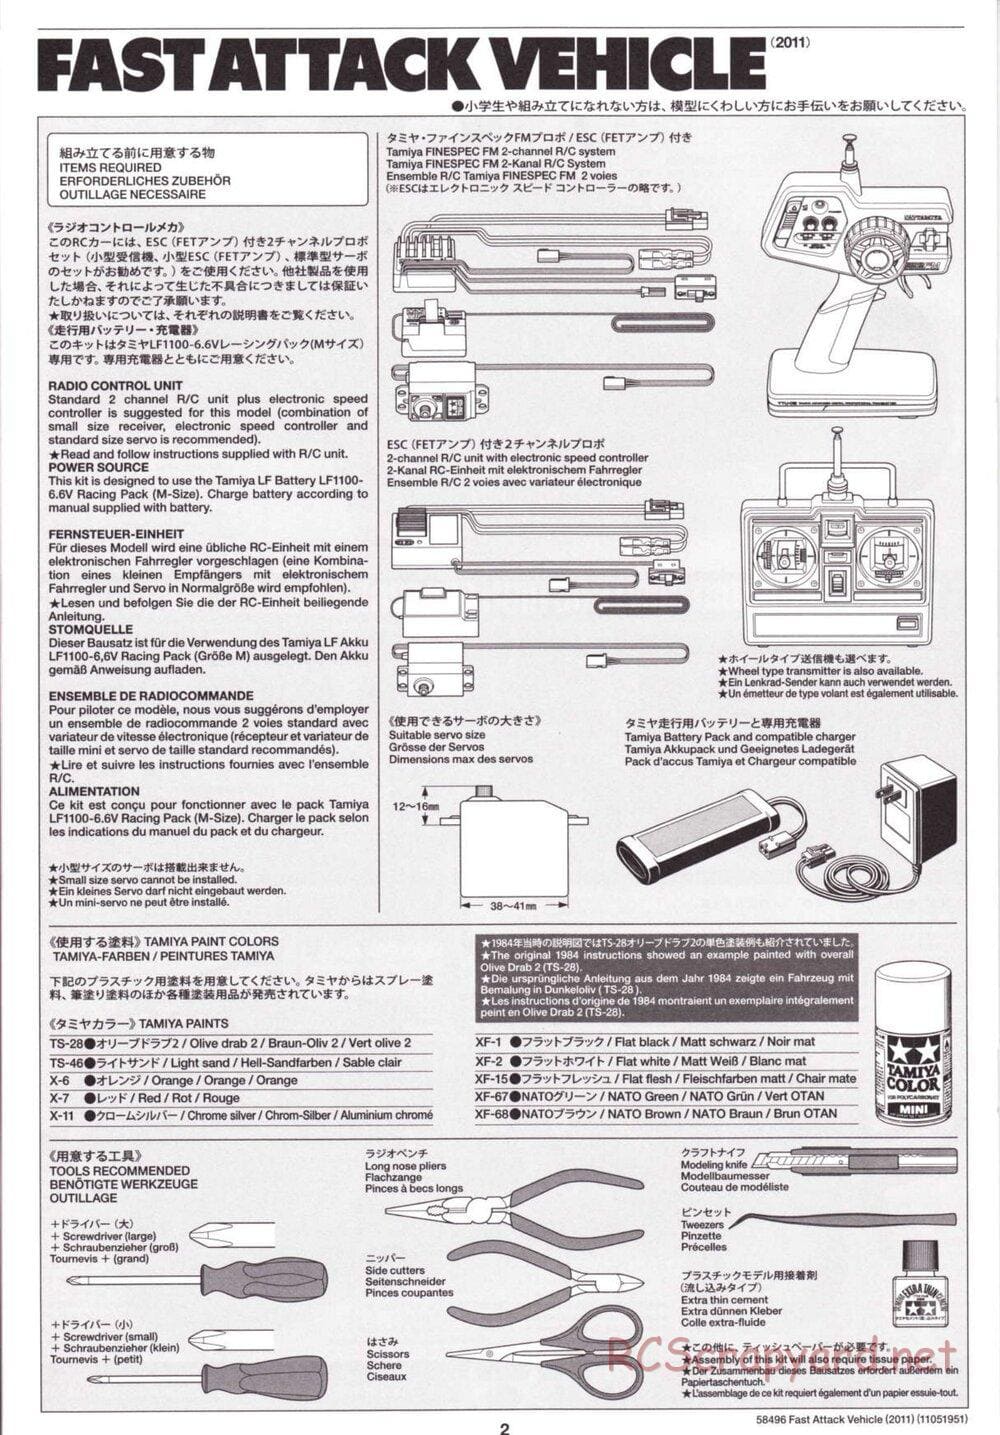 Tamiya - Fast Attack Vehicle 2011 - FAV Chassis - Manual - Page 2